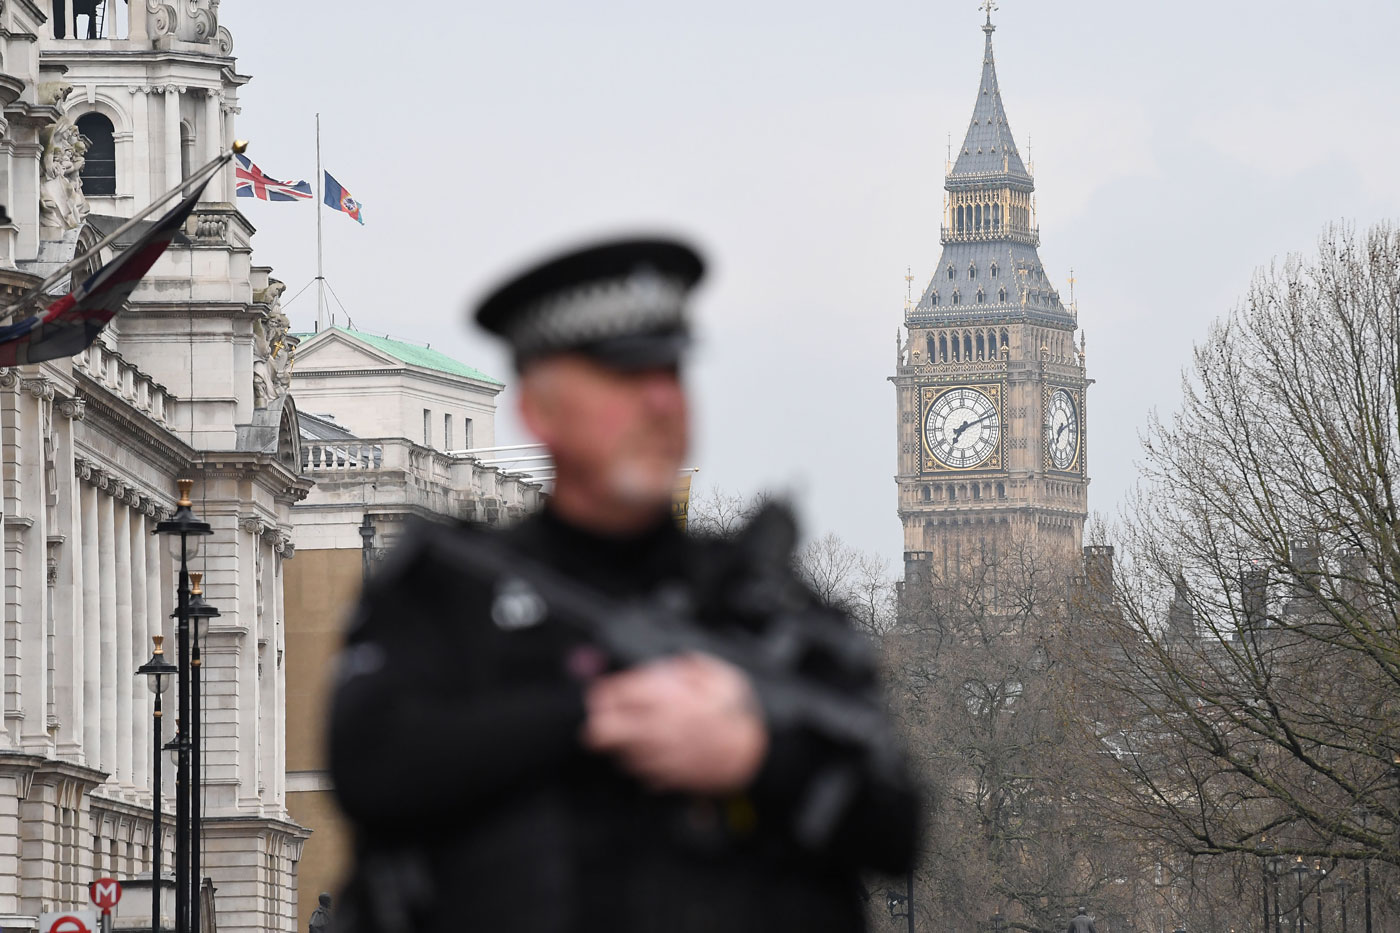 Parlamento reanuda actividad con minuto de silencio tras atentado de Londres